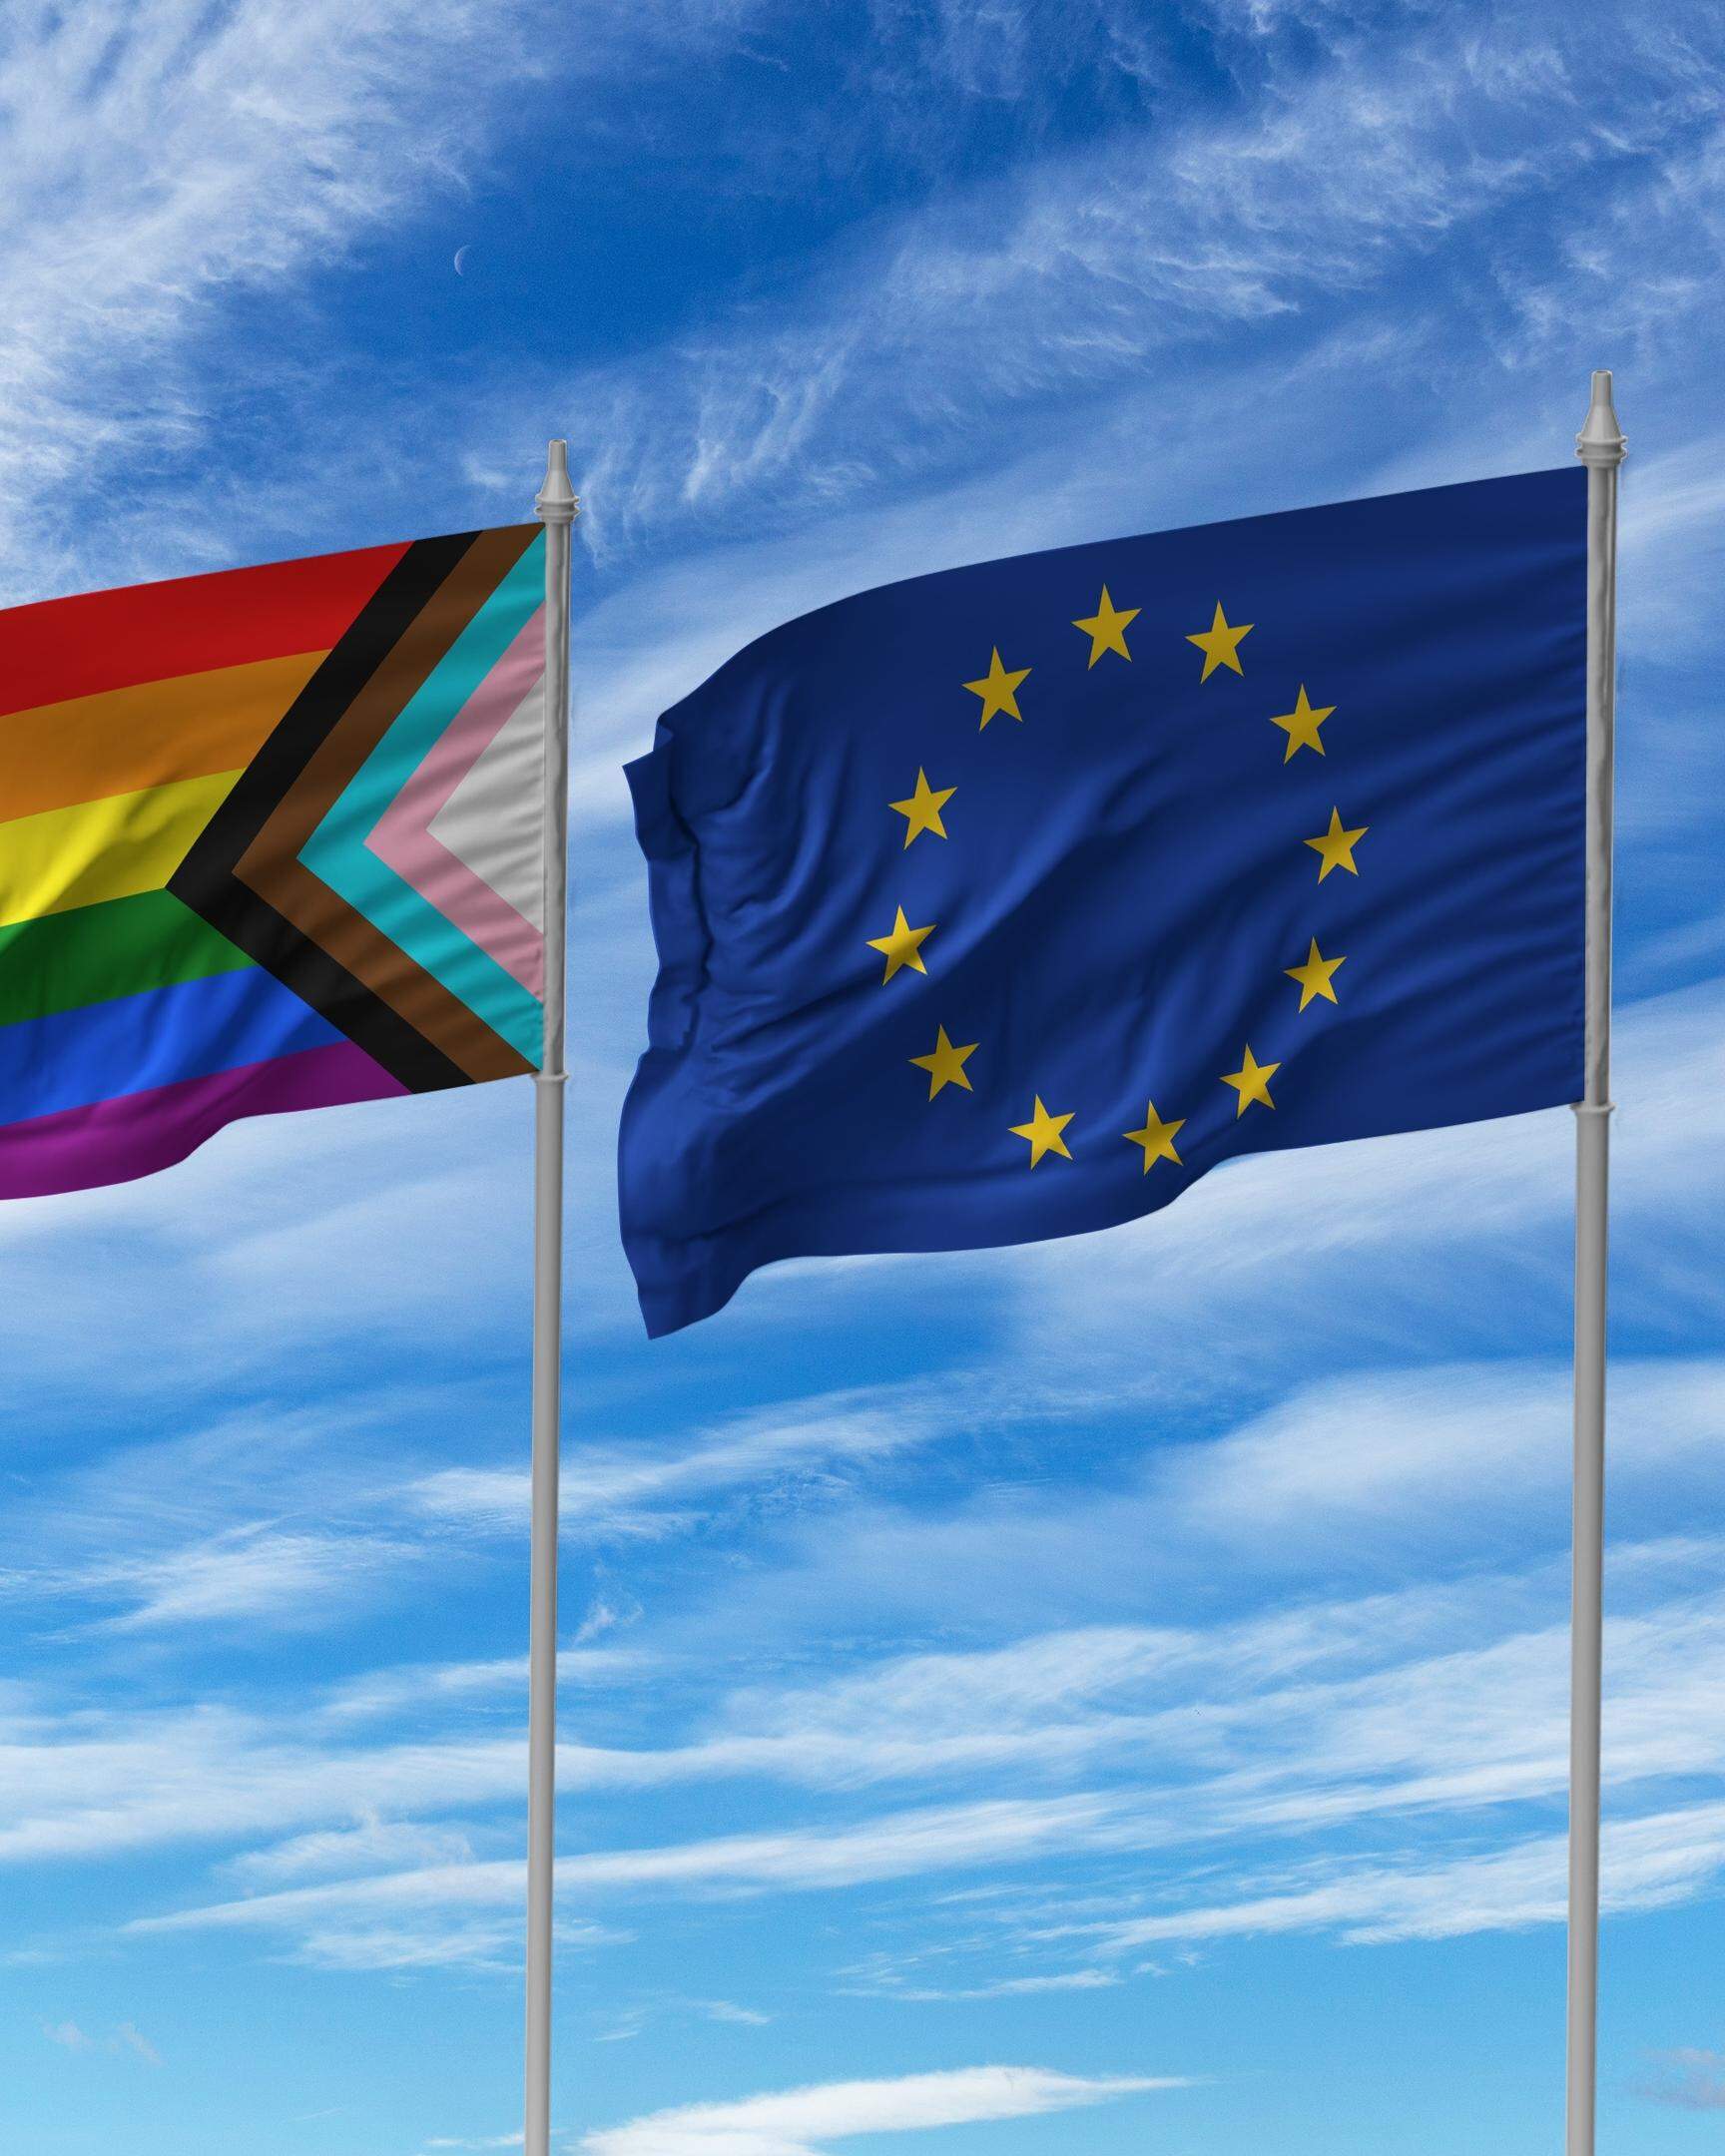 Durch das Erstarken der Rechtsextremen sind die Rechte der LGBTIQ-Community in manchen Teilen der EU bedroht, warnen einige Parteien in ihren Wahlprogrammen.